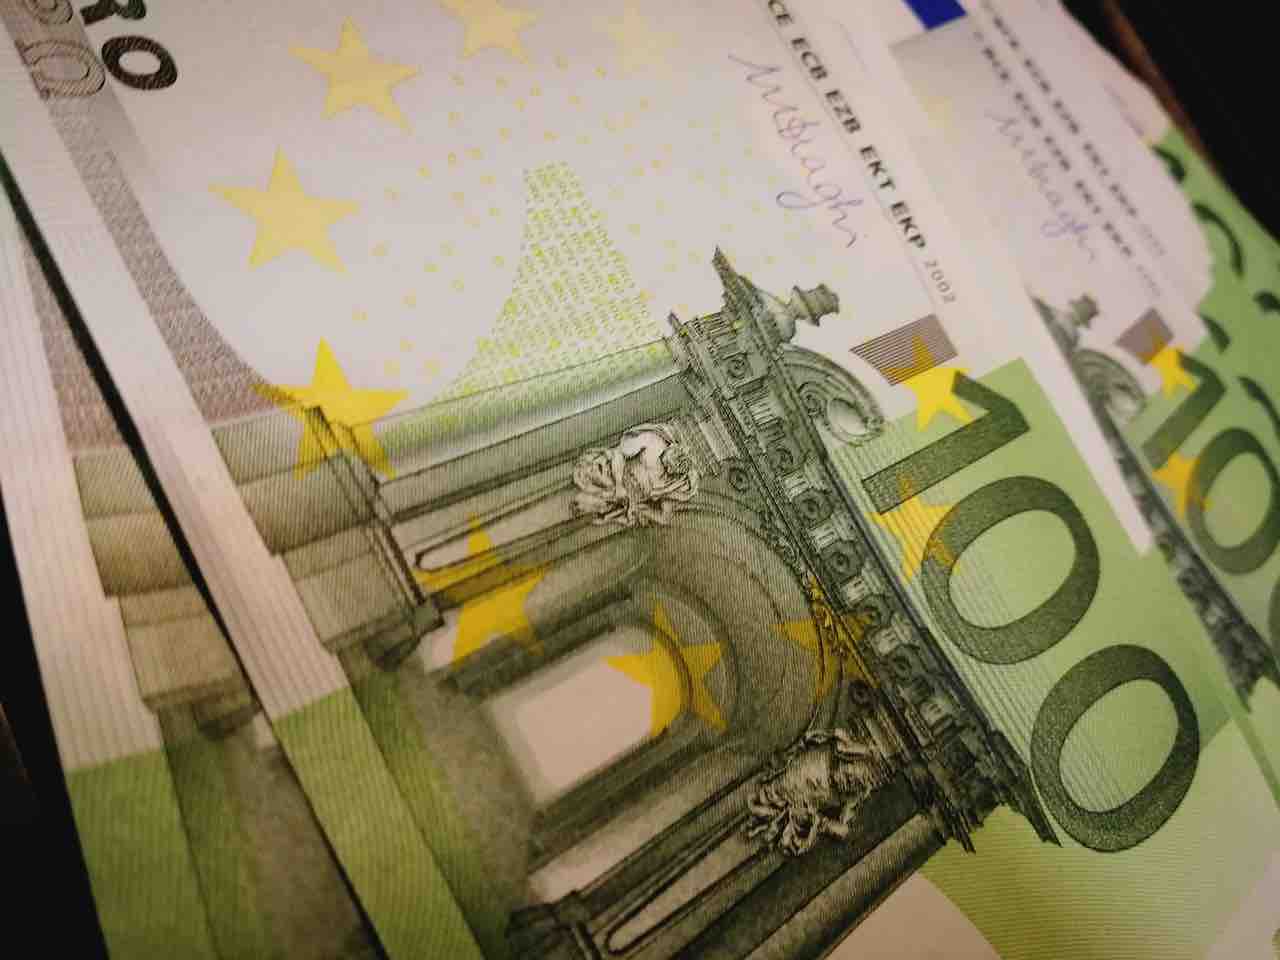 Banconote da 100 euro